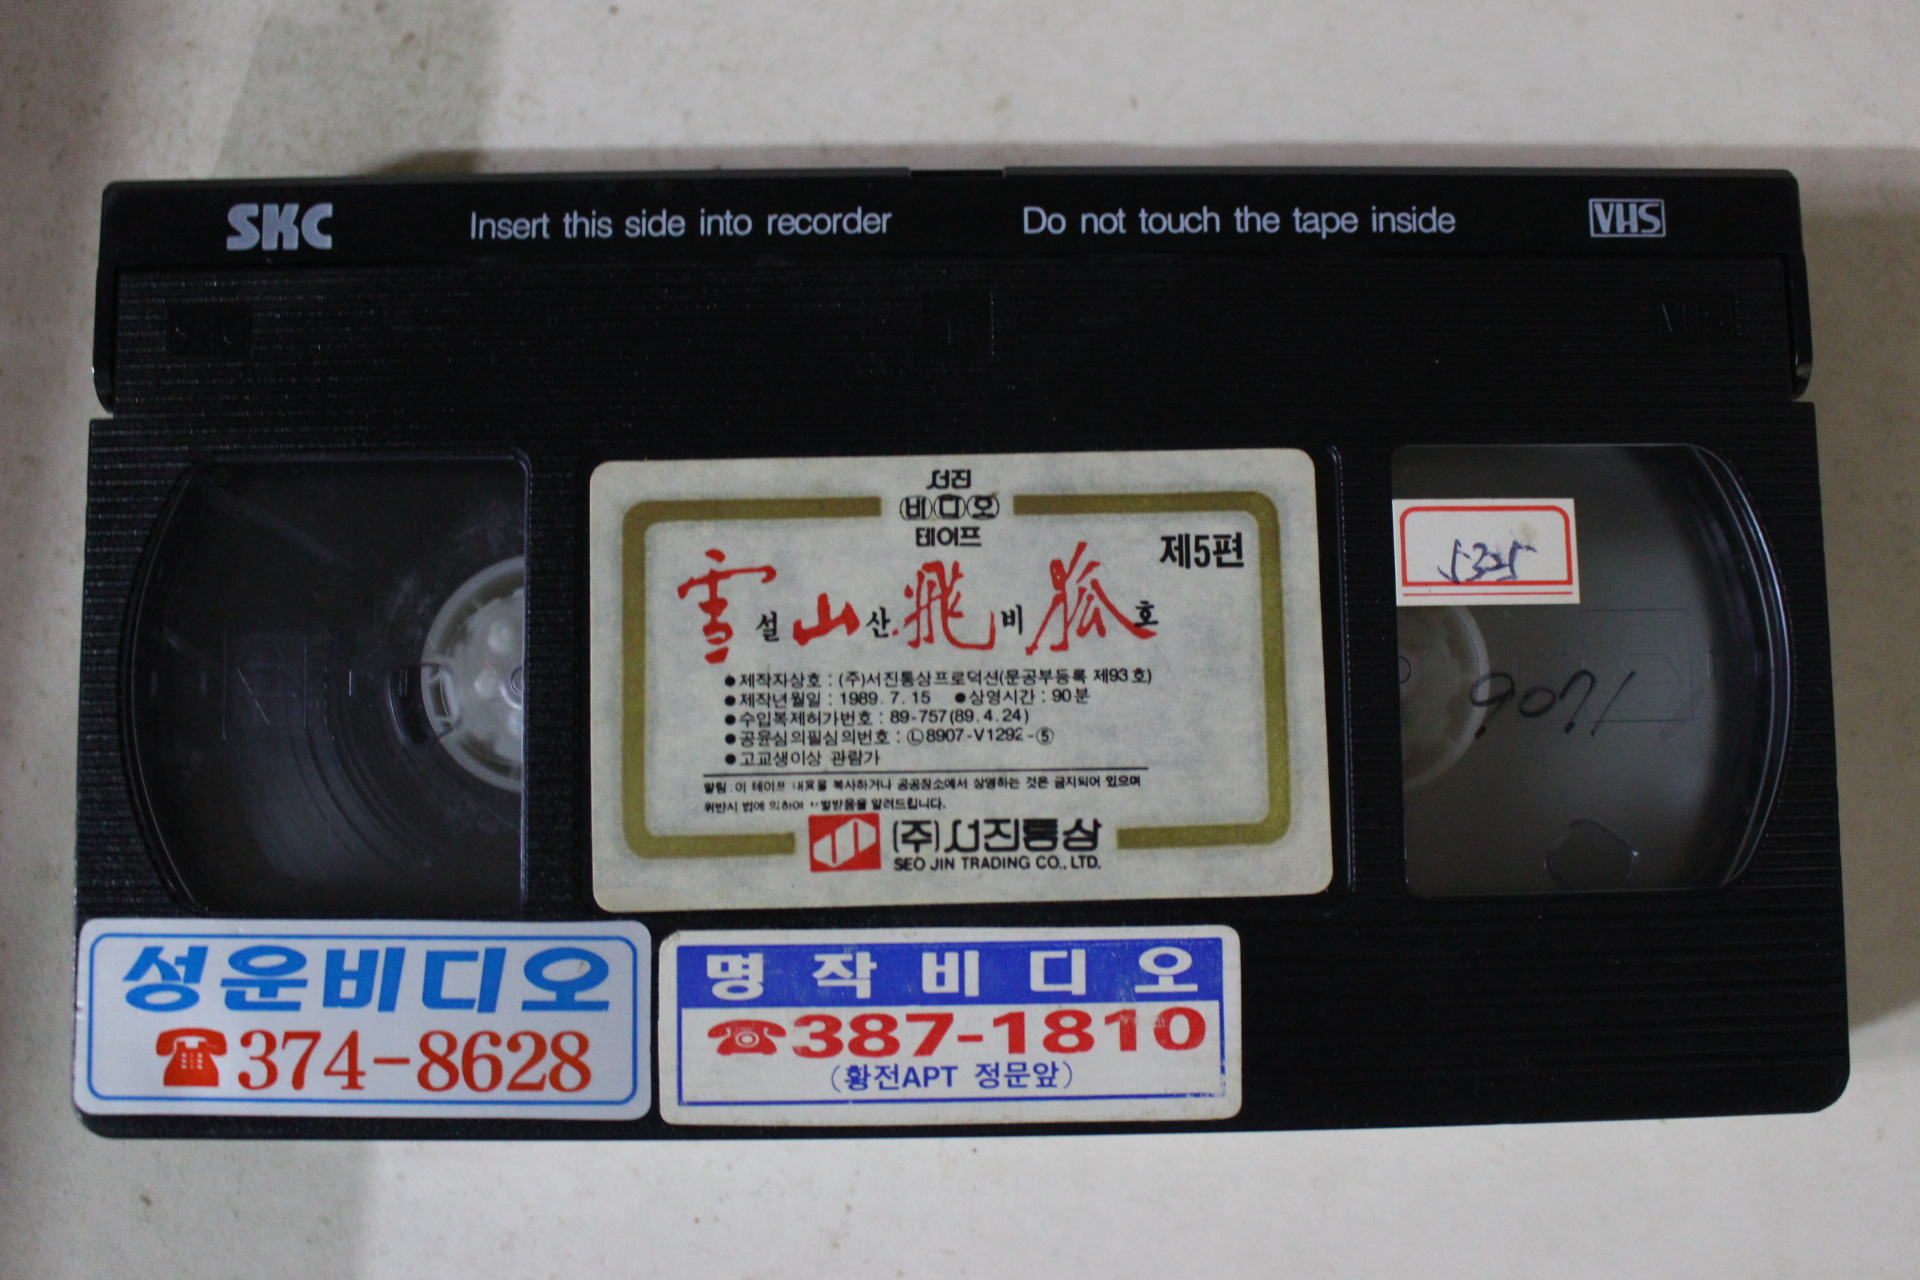 342-1989년 설산비호 5편 비디오테이프